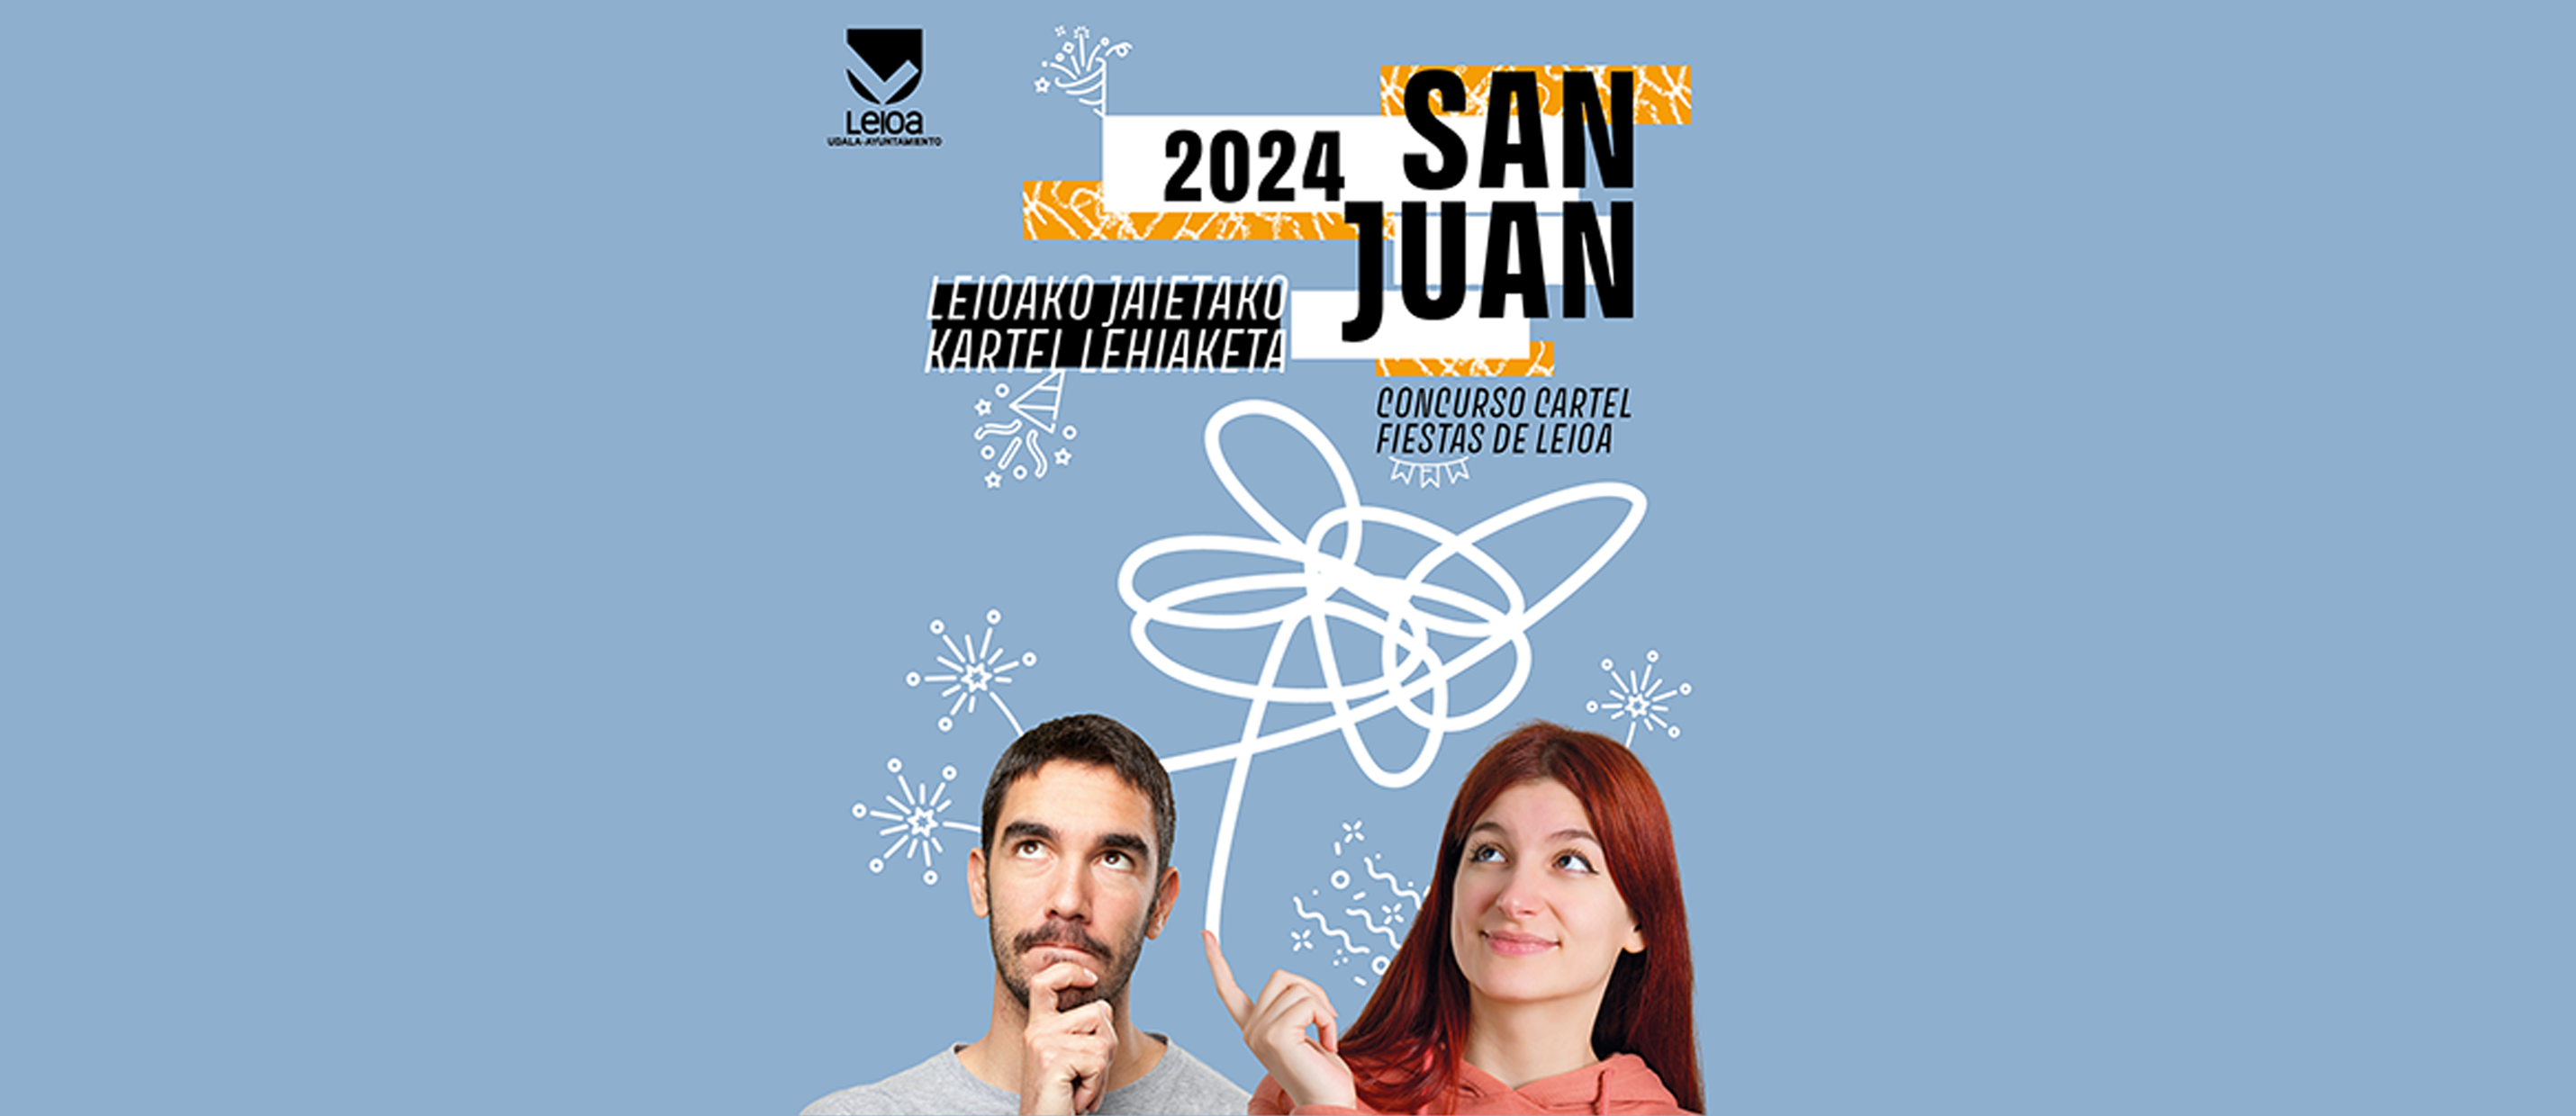 San Juan 2024 kartelen lehiaketa